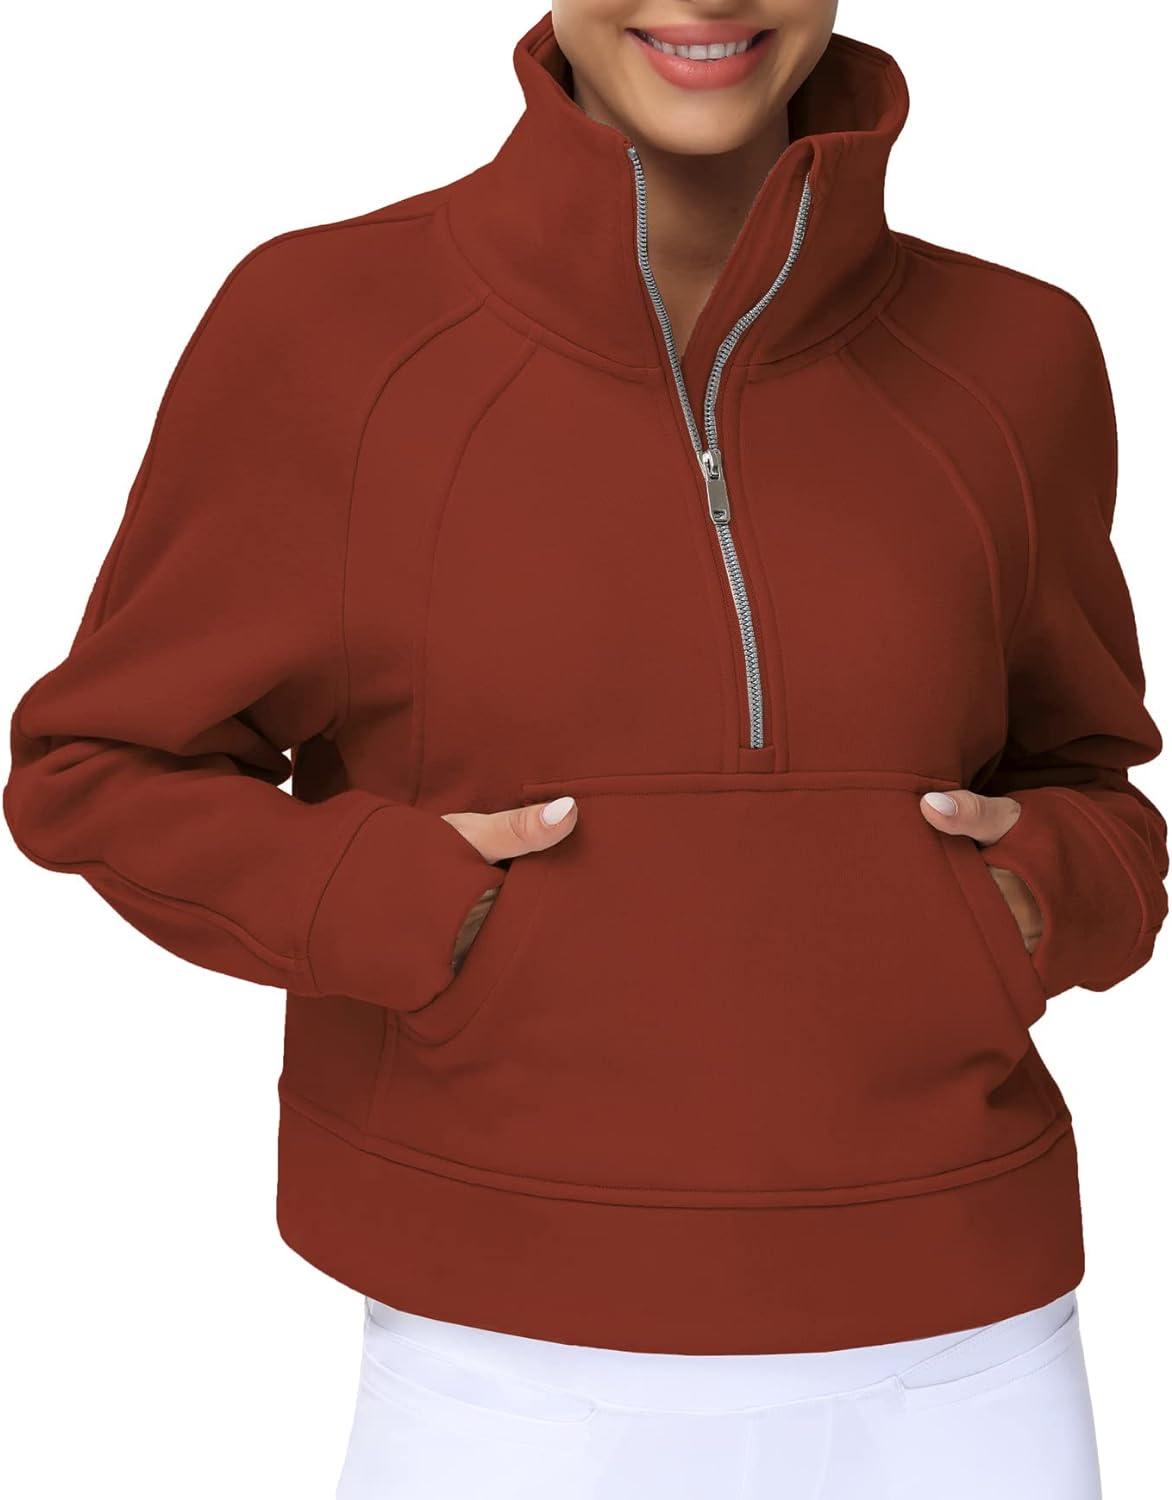 THE GYM PEOPLE Womens' Half Zip Pullover Fleece Stand Collar Crop